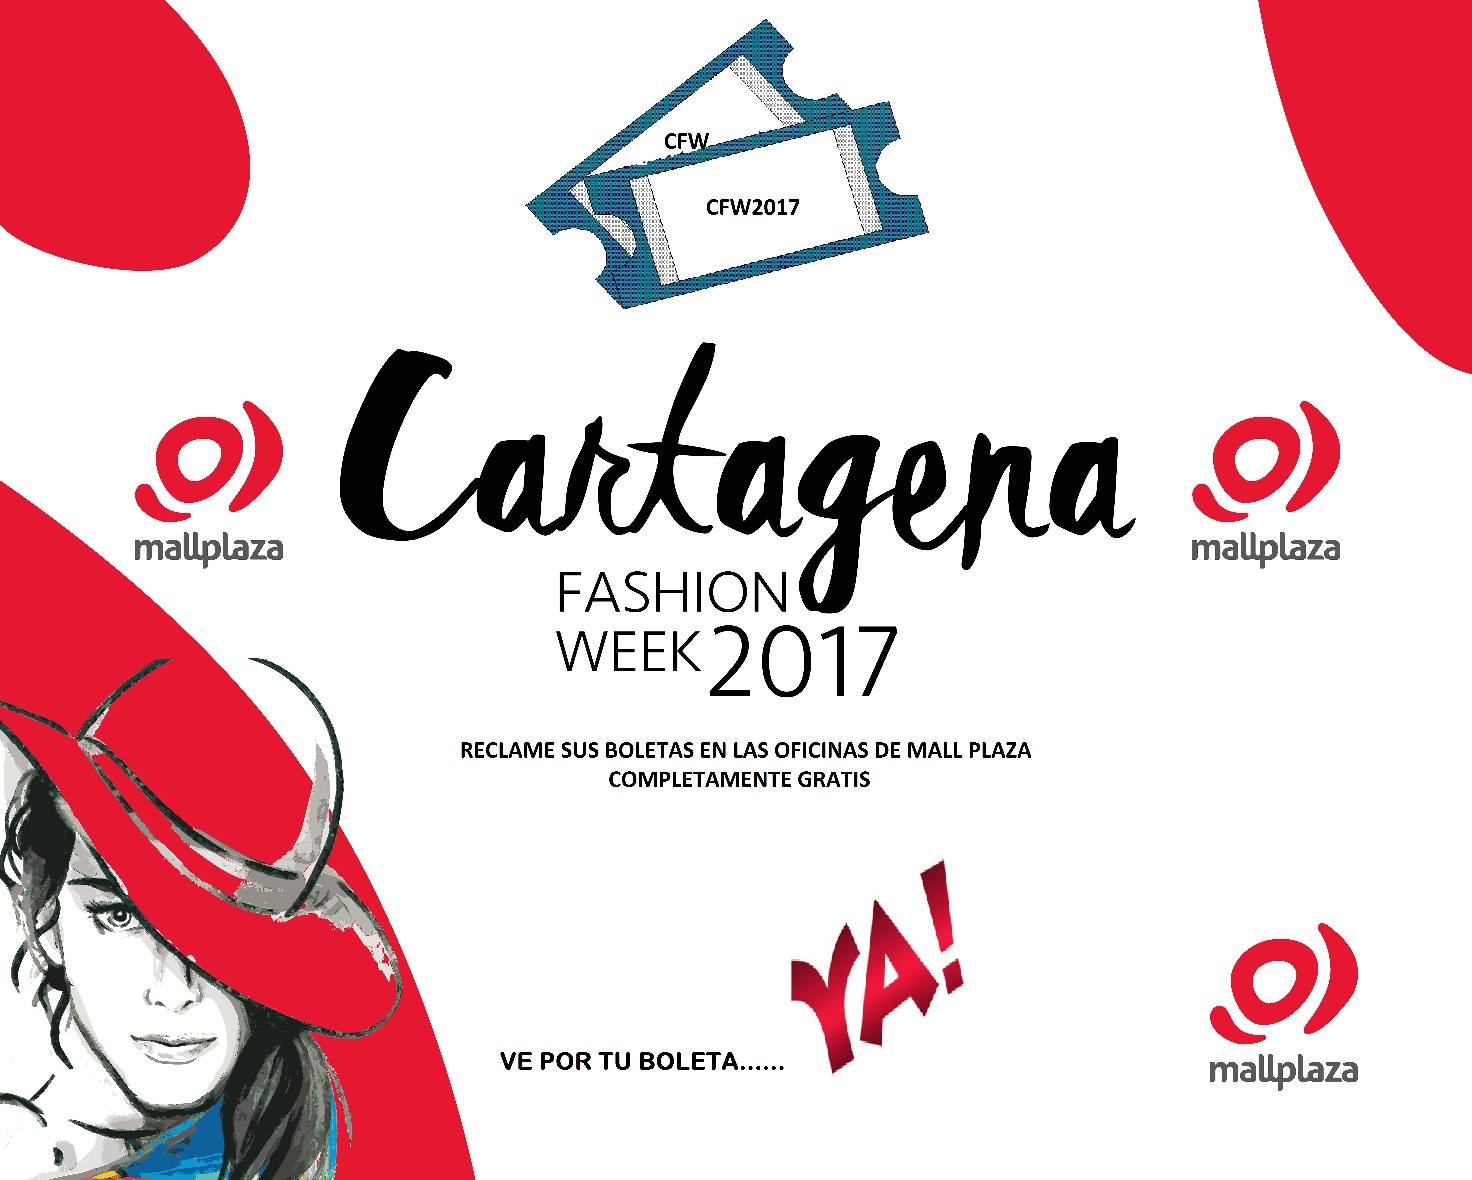 Sólo un día para el Cartagena Fashion Week 2017, asiste gratis a algunas pasarelas